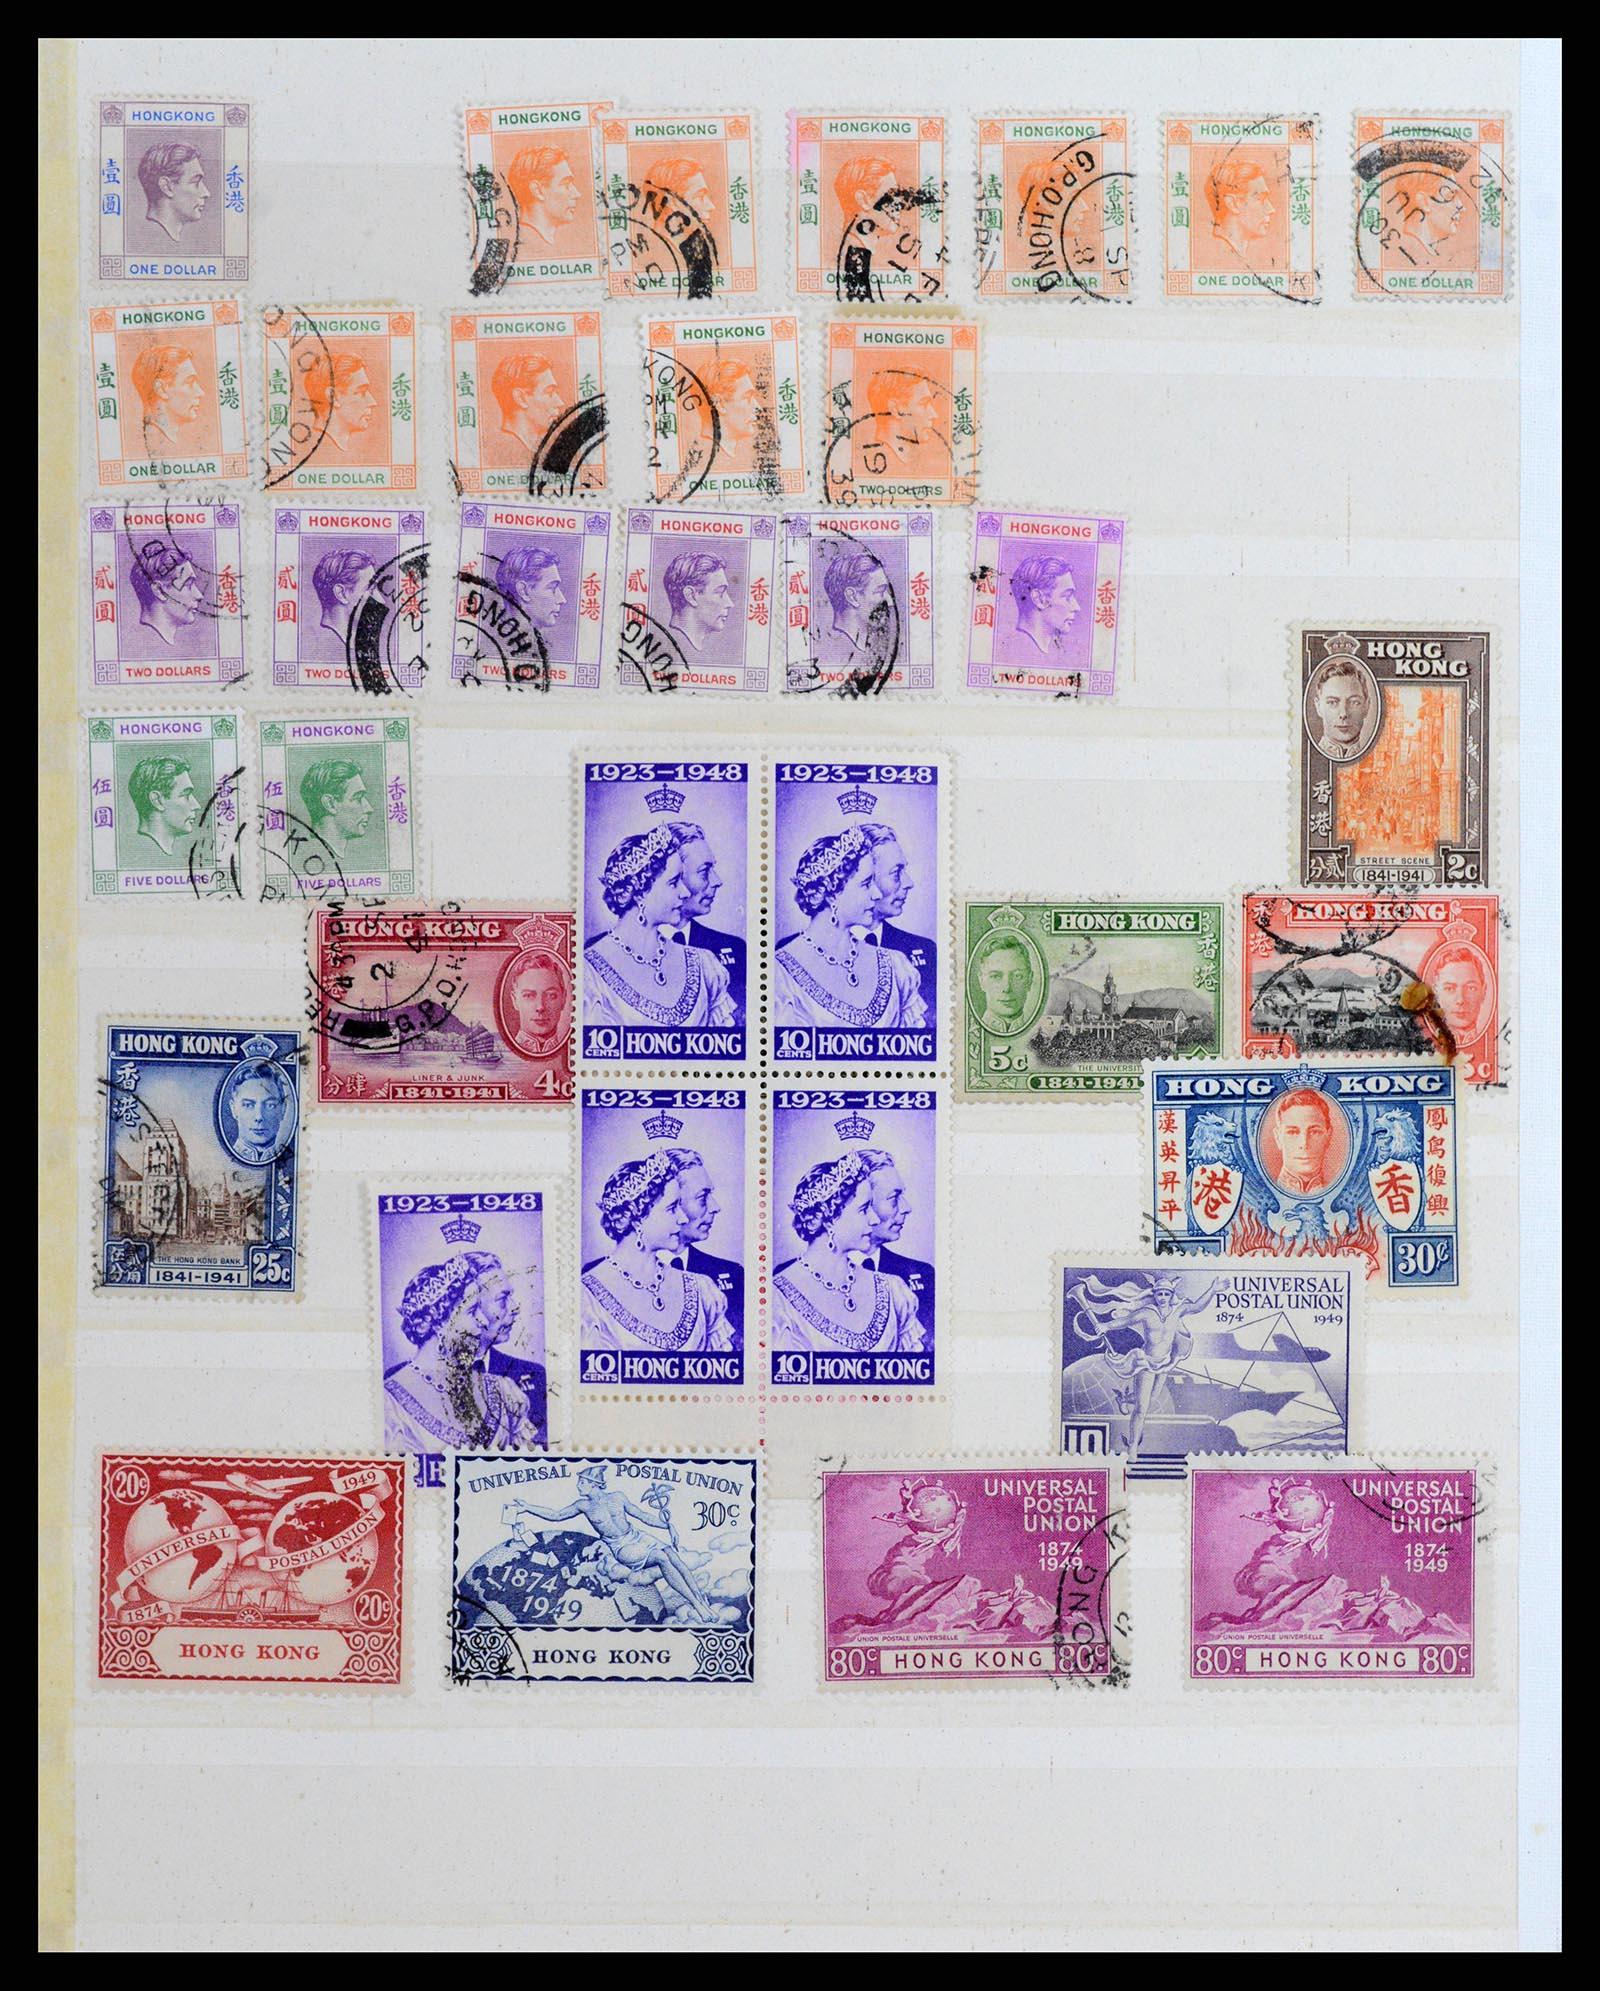 37358 012 - Stamp collection 37358 Hong Kong 1861-1997.